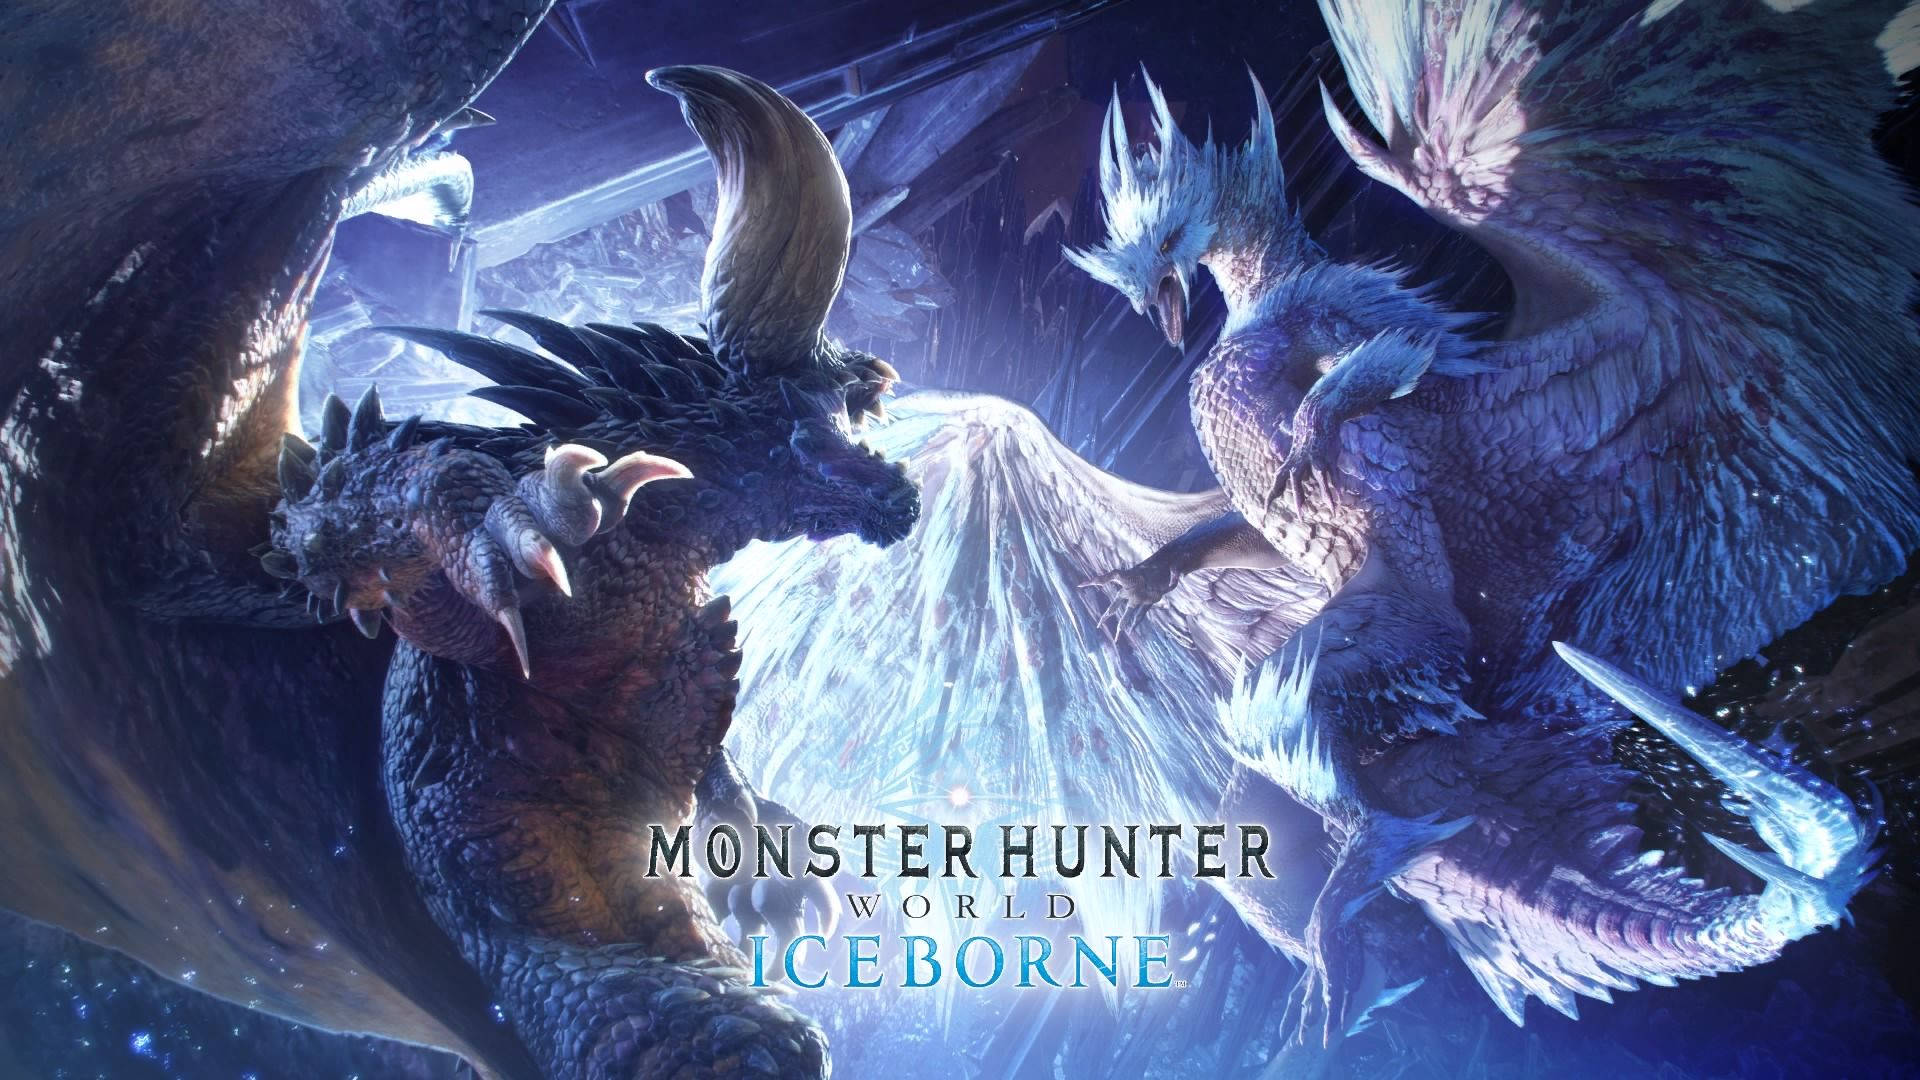 Monster Hunter World Iceborne Nergigante Velkhana Wallpaper